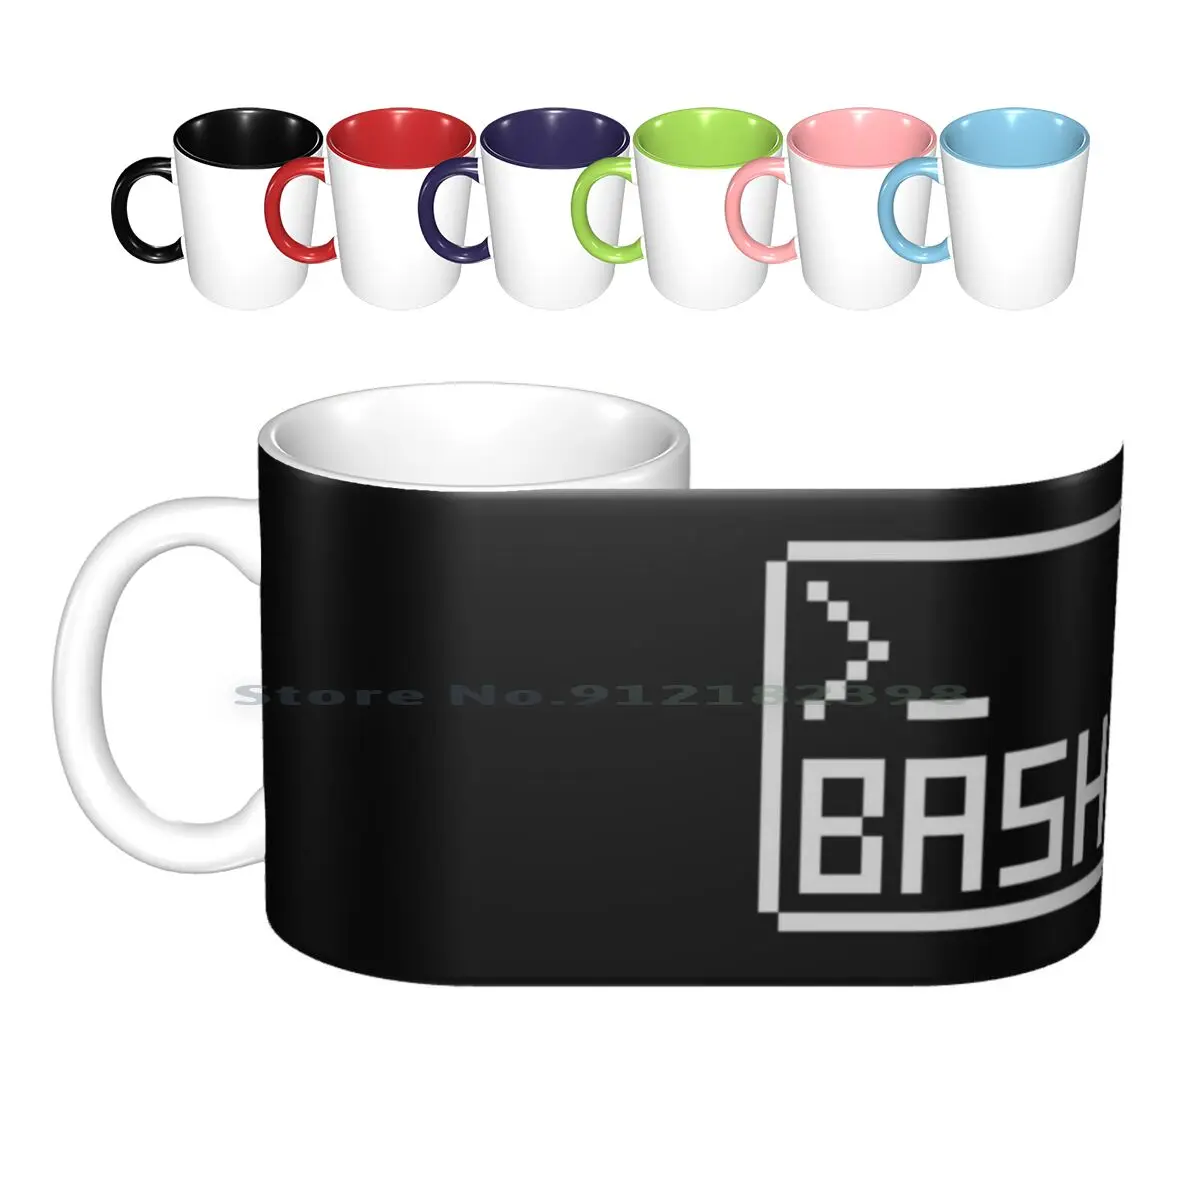 

Пиксельный рисунок Bash для хакеров командной строки, керамические кружки, кофейные чашки, кружка для молочного чая, Bash Shell, программатор пикс...